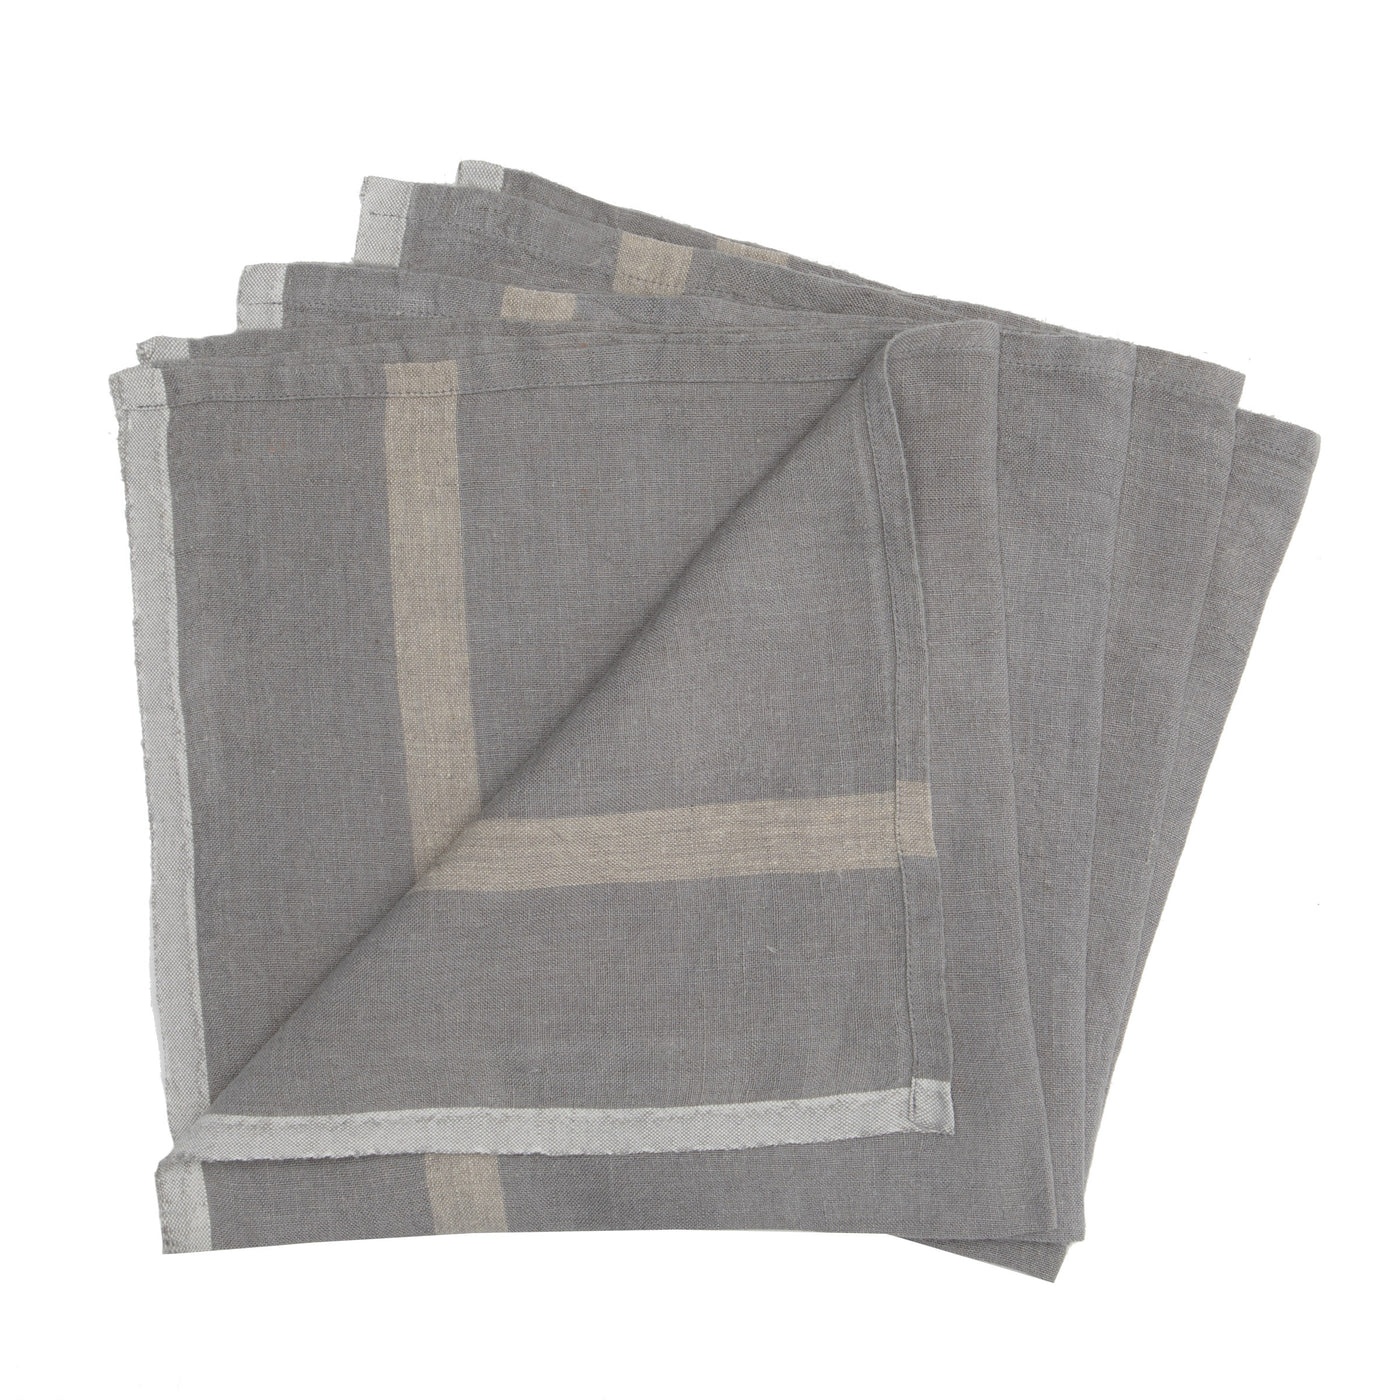 Laundered Linen Napkins Grey & Natural, Set of 4